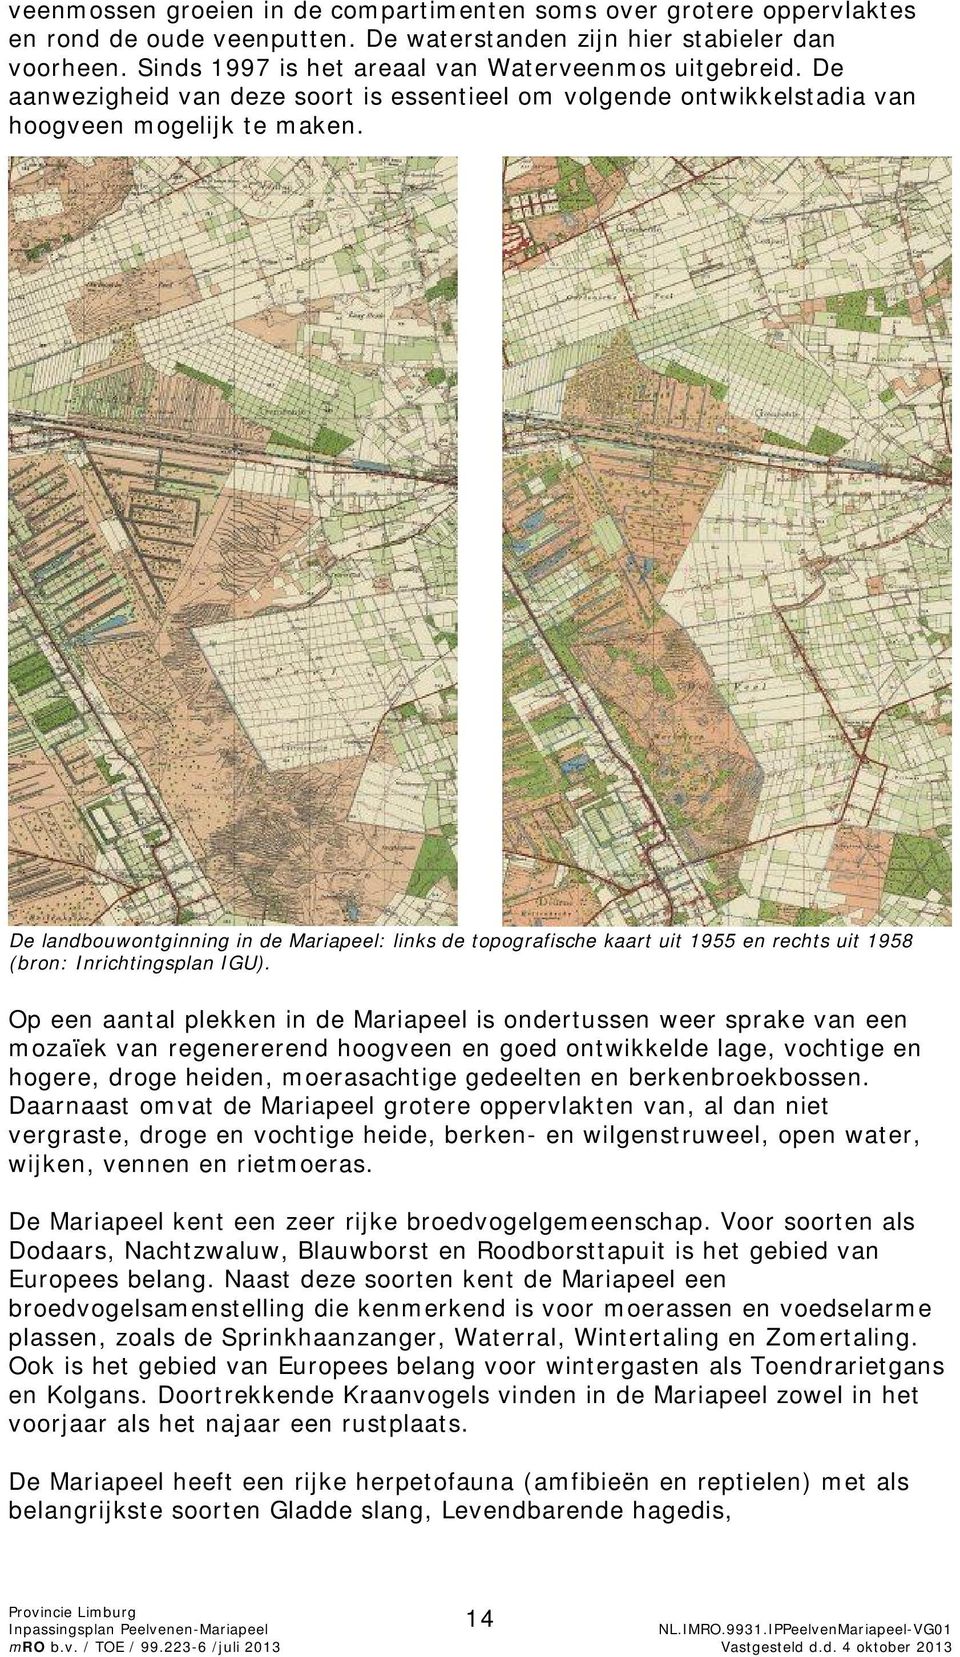 De landbouwontginning in de Mariapeel: links de topografische kaart uit 1955 en rechts uit 1958 (bron: Inrichtingsplan IGU).